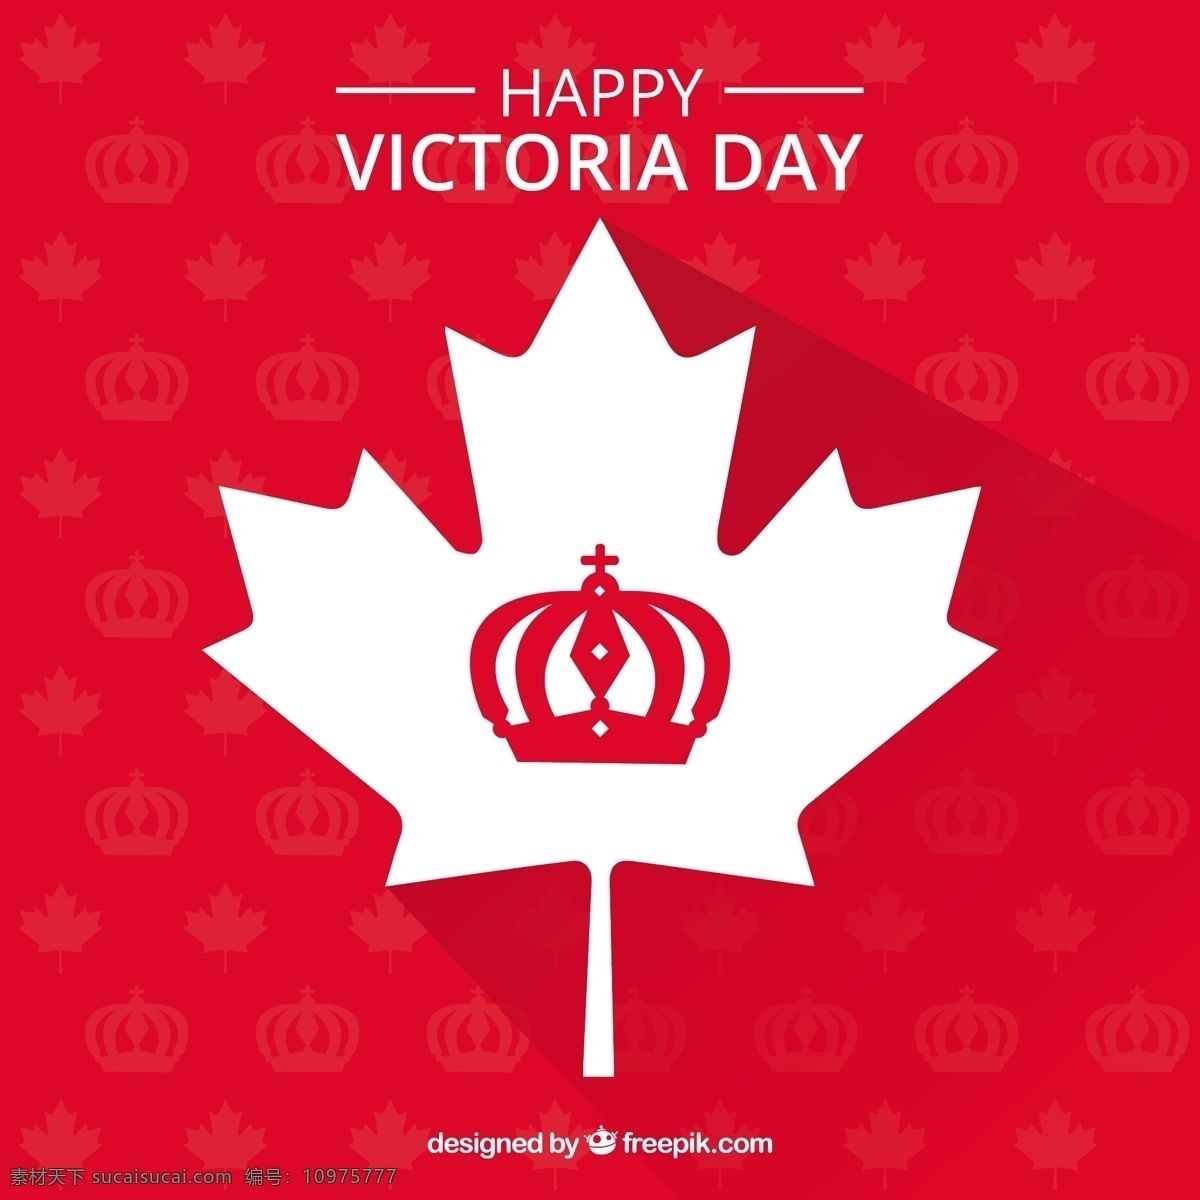 维多利亚 日 背景 白 叶 生日 树叶 红色 国旗 焰火 假日 白色 女王 加拿大 白天 星期一 游行 君主 君主政体